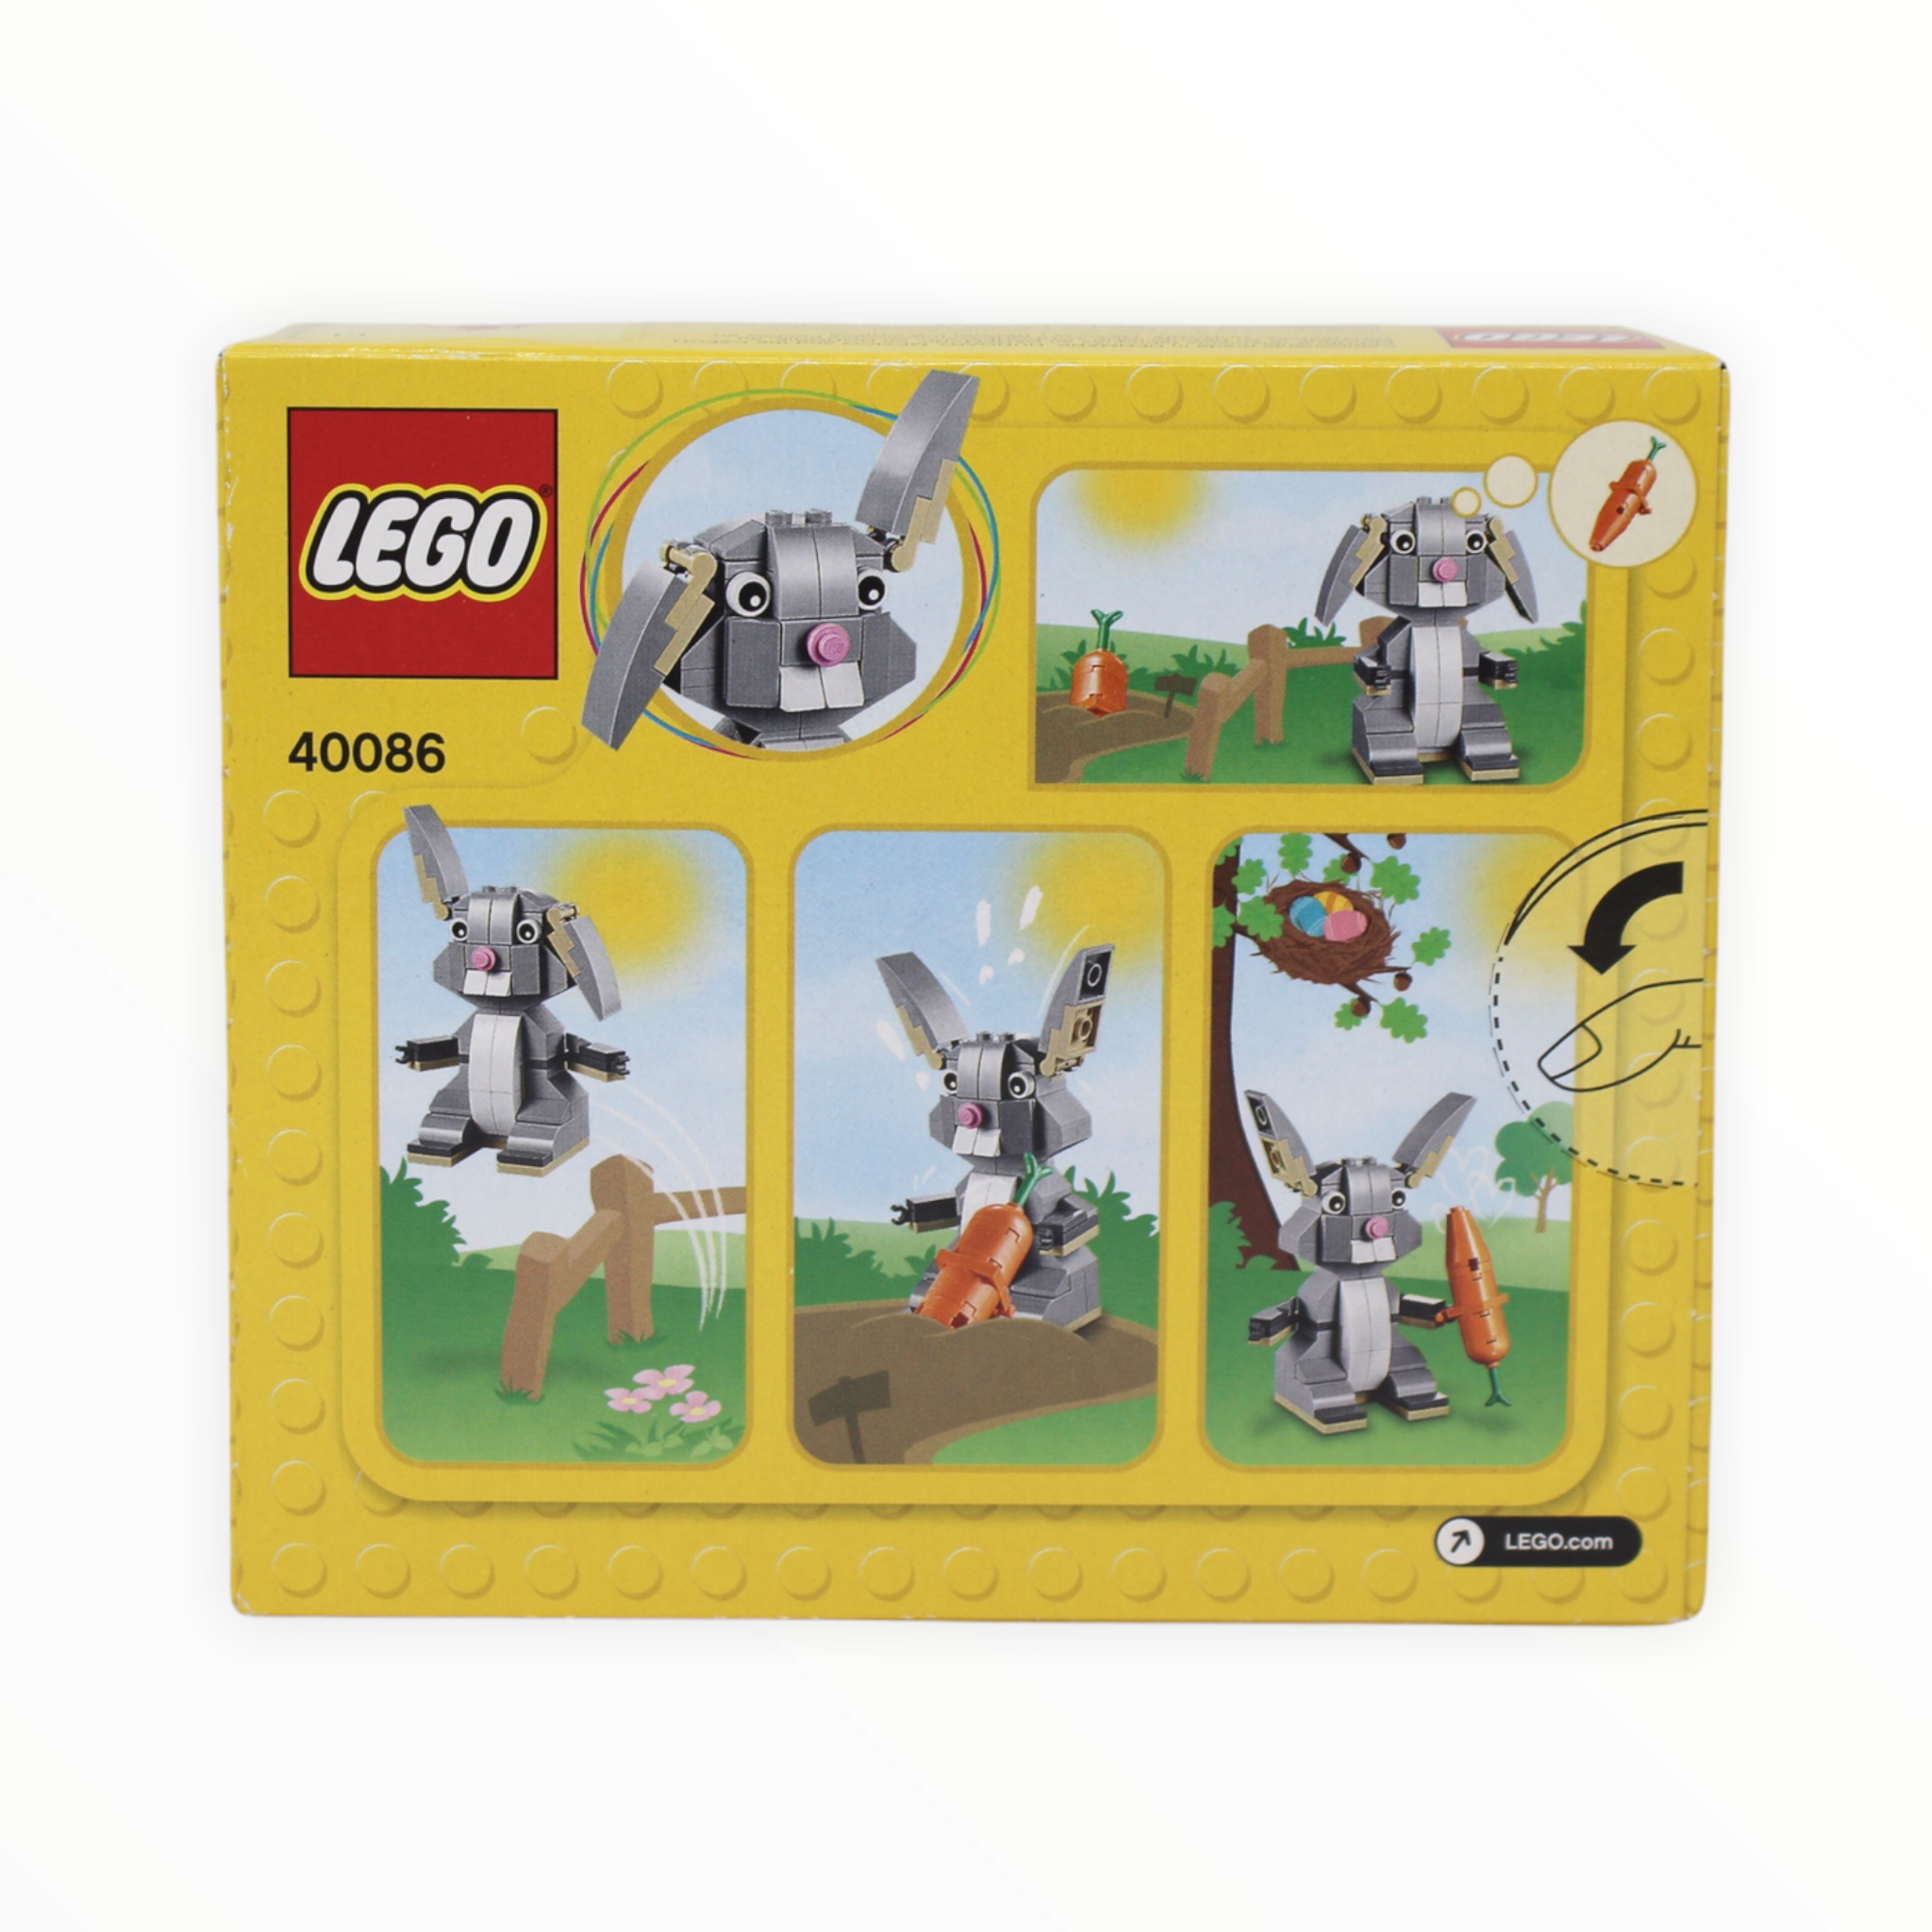 Retired Set 40086 LEGO Easter